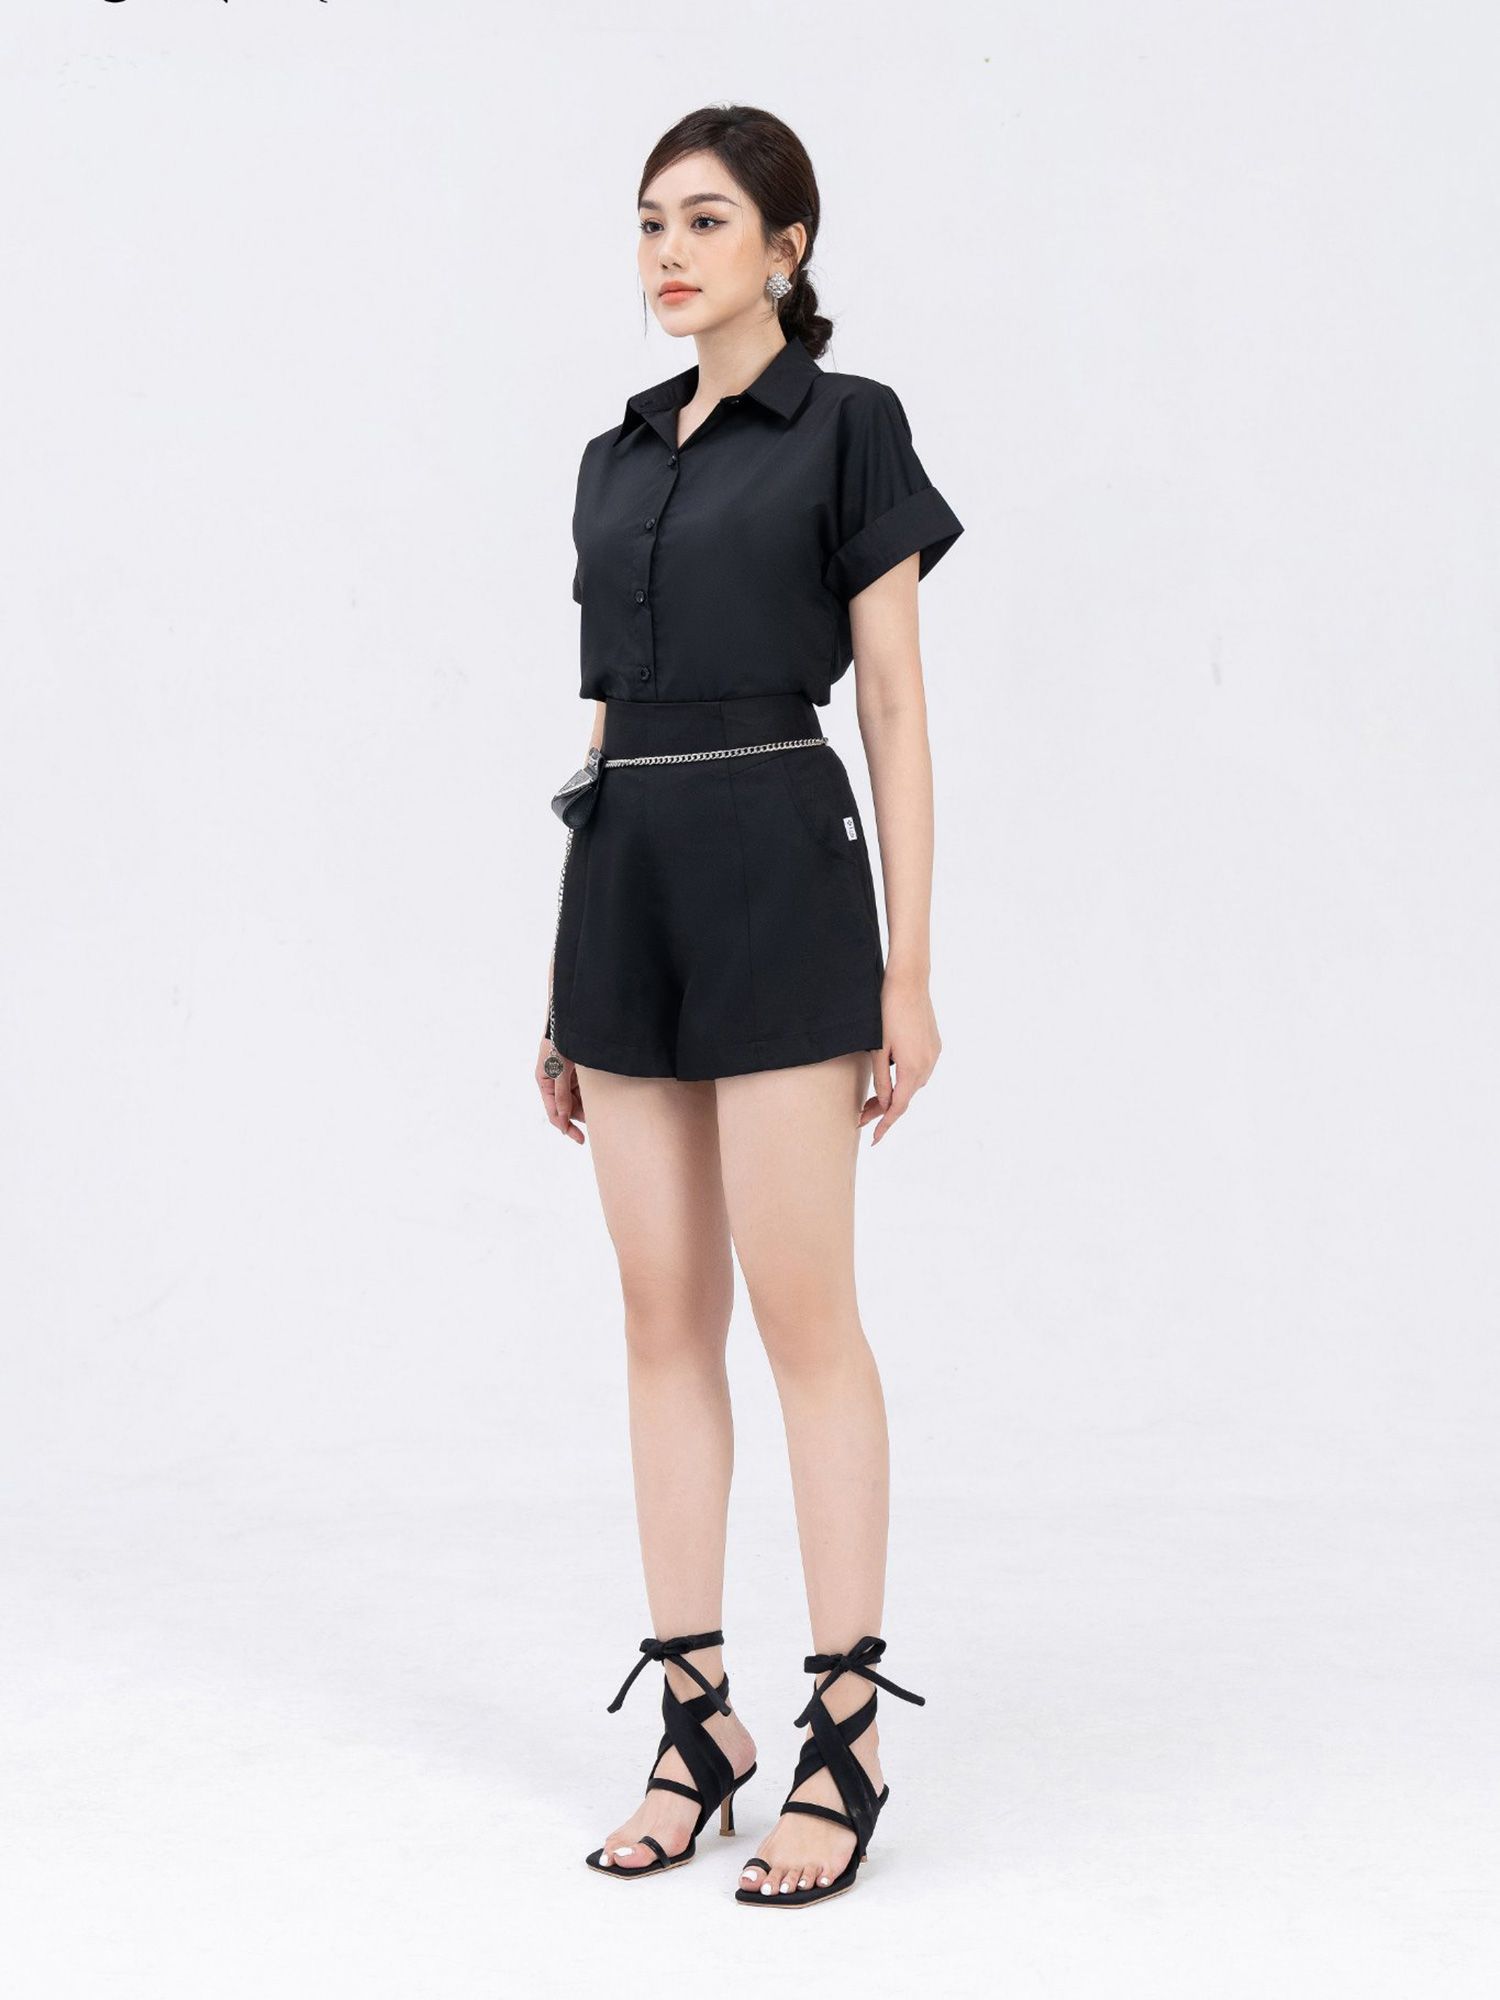 Xinh chuẩn chỉnh với trang phục áo đen cực cool ngầu - XinhXinh.vn